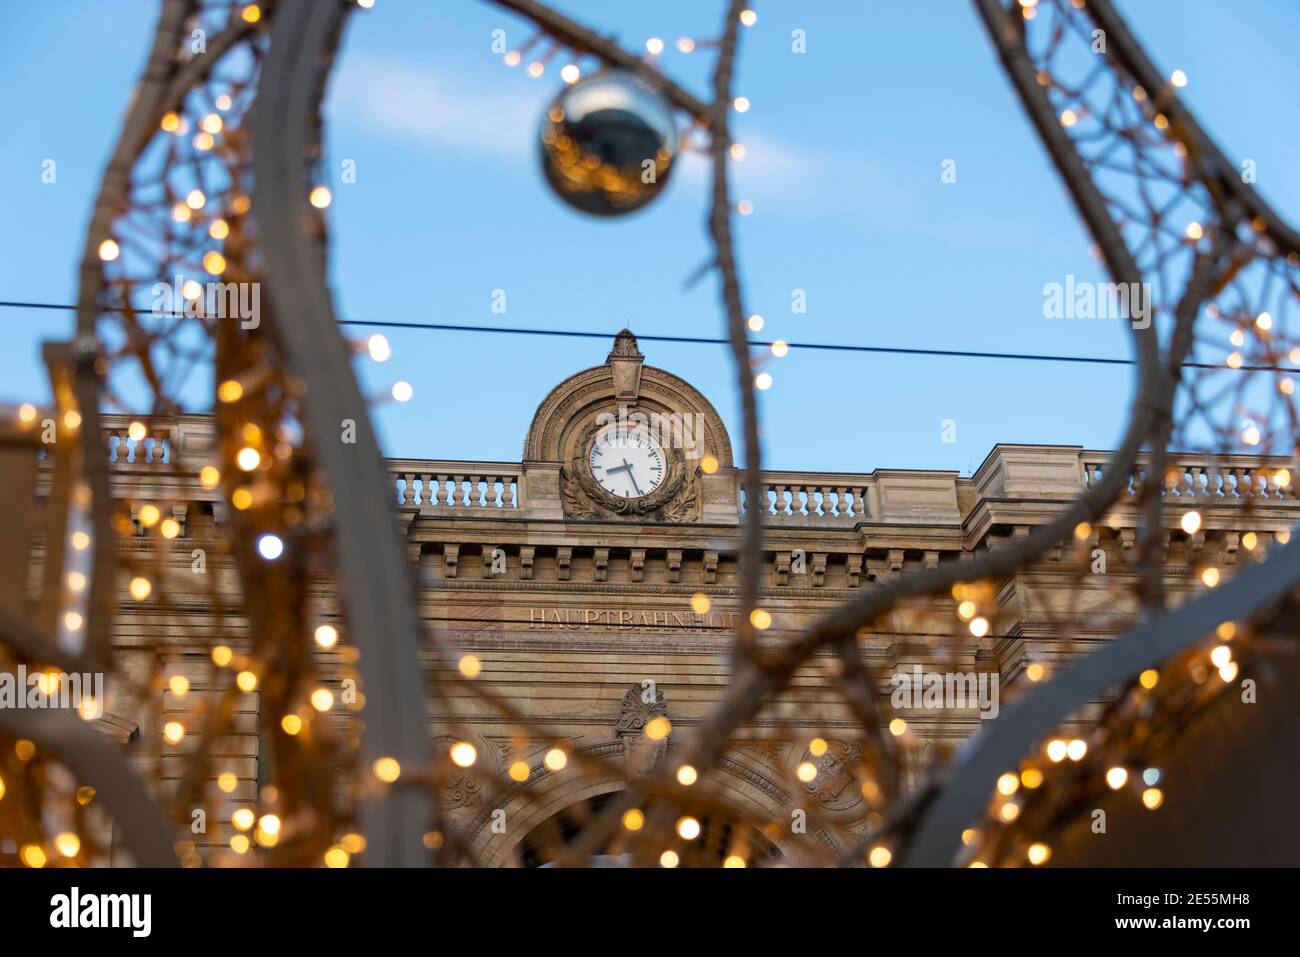 Magdeburg, Deutschland. Januar 2021. Über dem Haupteingang des  Hauptbahnhofs ist eine große Uhr in das historische Gebäude eingebettet.  Quelle: Stephan Schulz/dpa-Zentralbild/ZB/dpa/Alamy Live News  Stockfotografie - Alamy